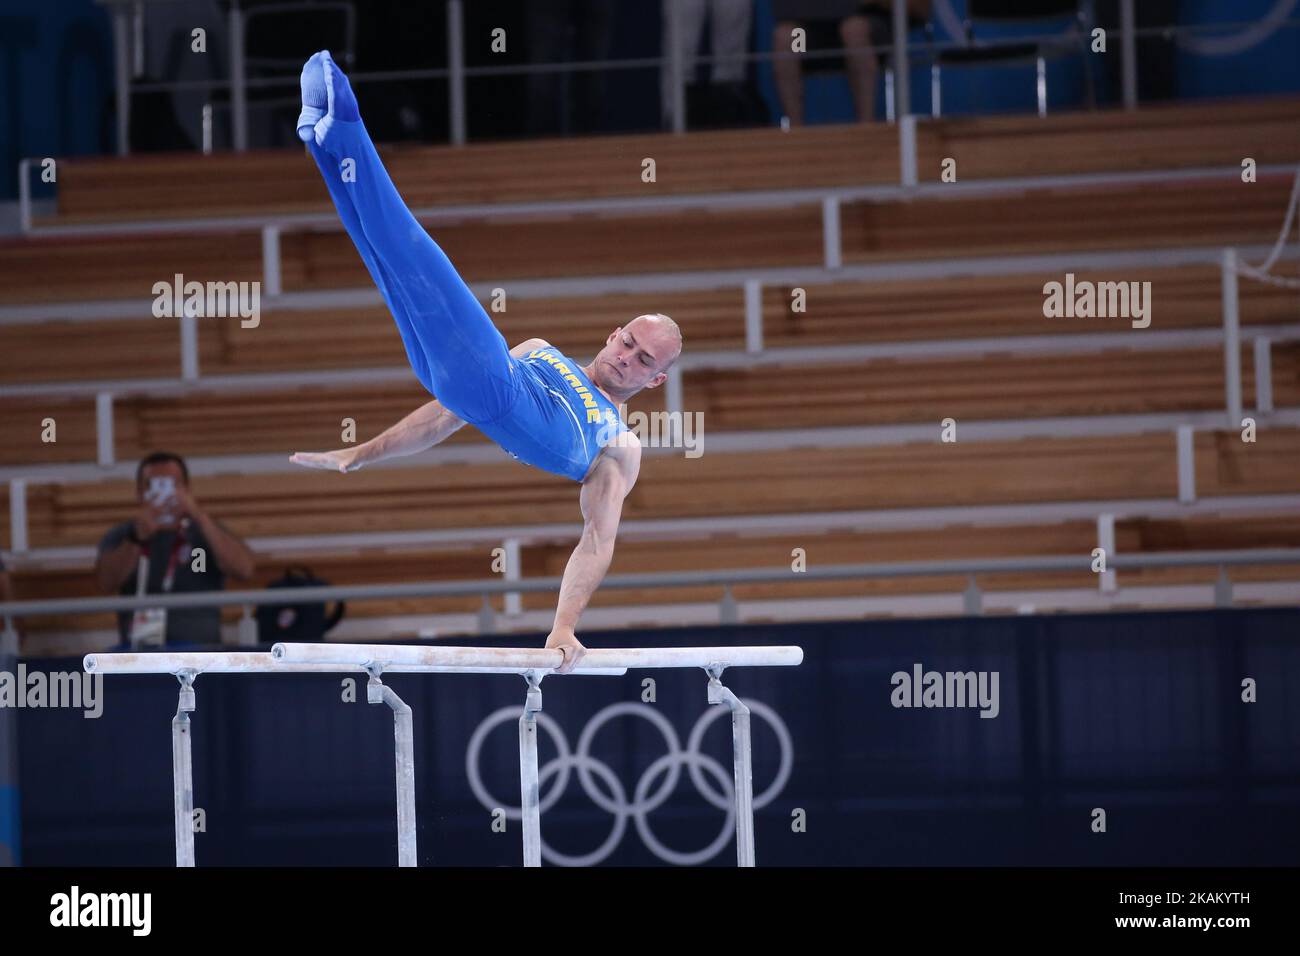 03rd AOÛT 2021 - TOKYO, JAPON: Petro PAKHNIUK d'Ukraine se produit aux barres parallèles des hommes lors des finales des appareils de gymnastique artistique aux Jeux Olympiques de Tokyo 2020 (photo de Mickael Chavet/RX) Banque D'Images